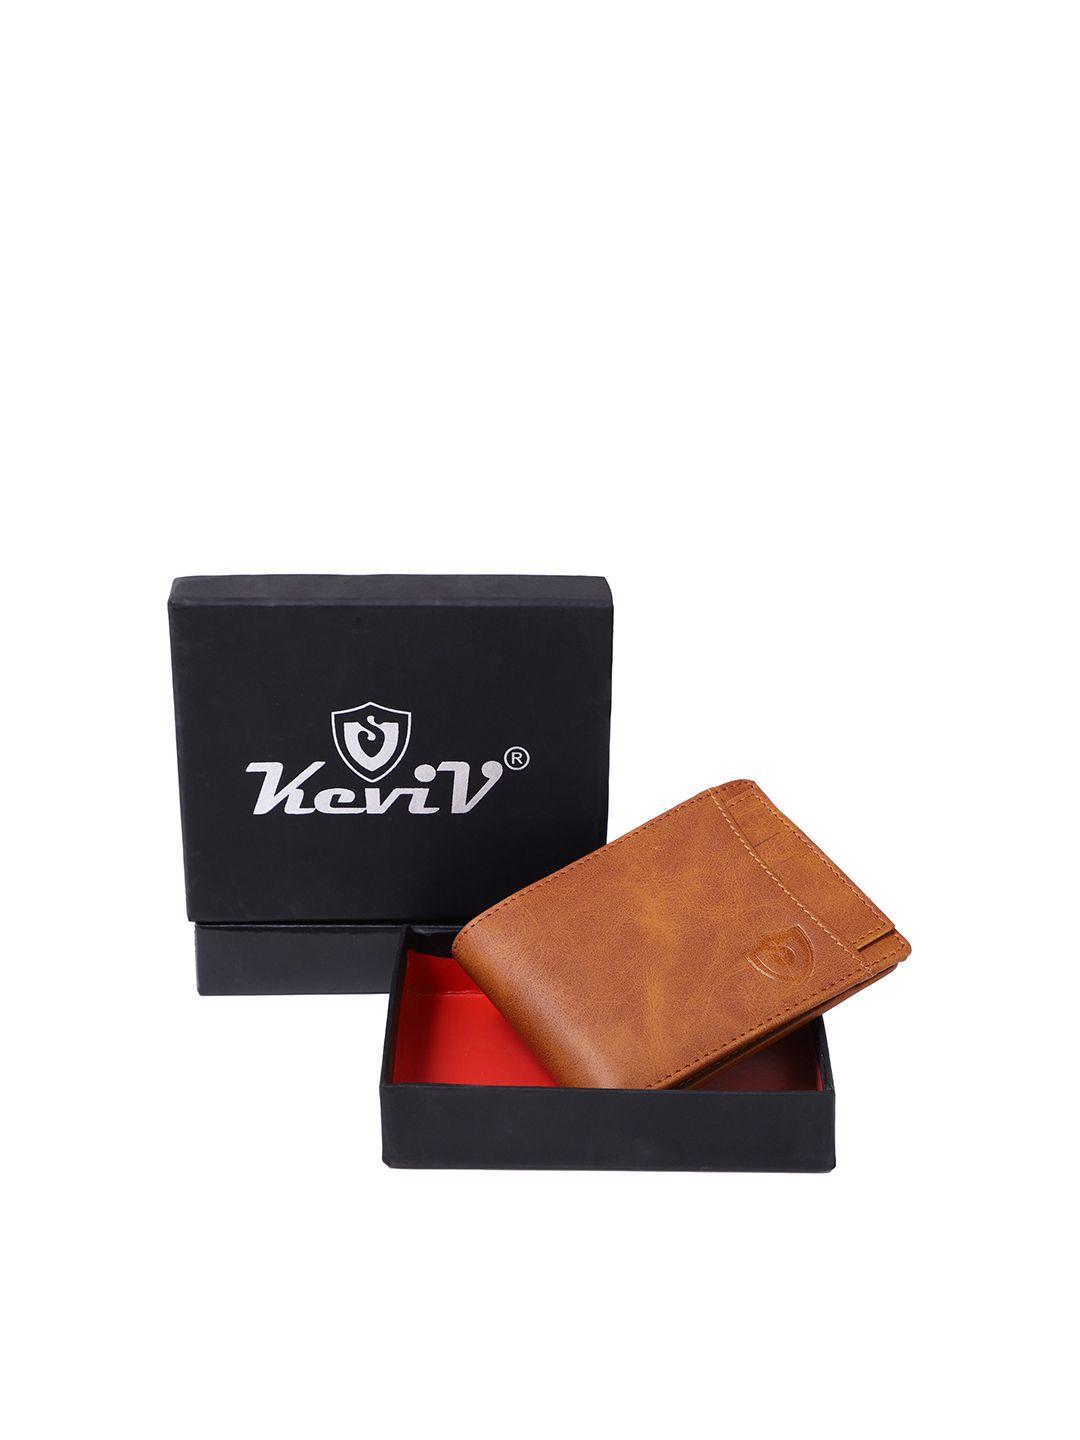 keviv men tan leather two fold wallet